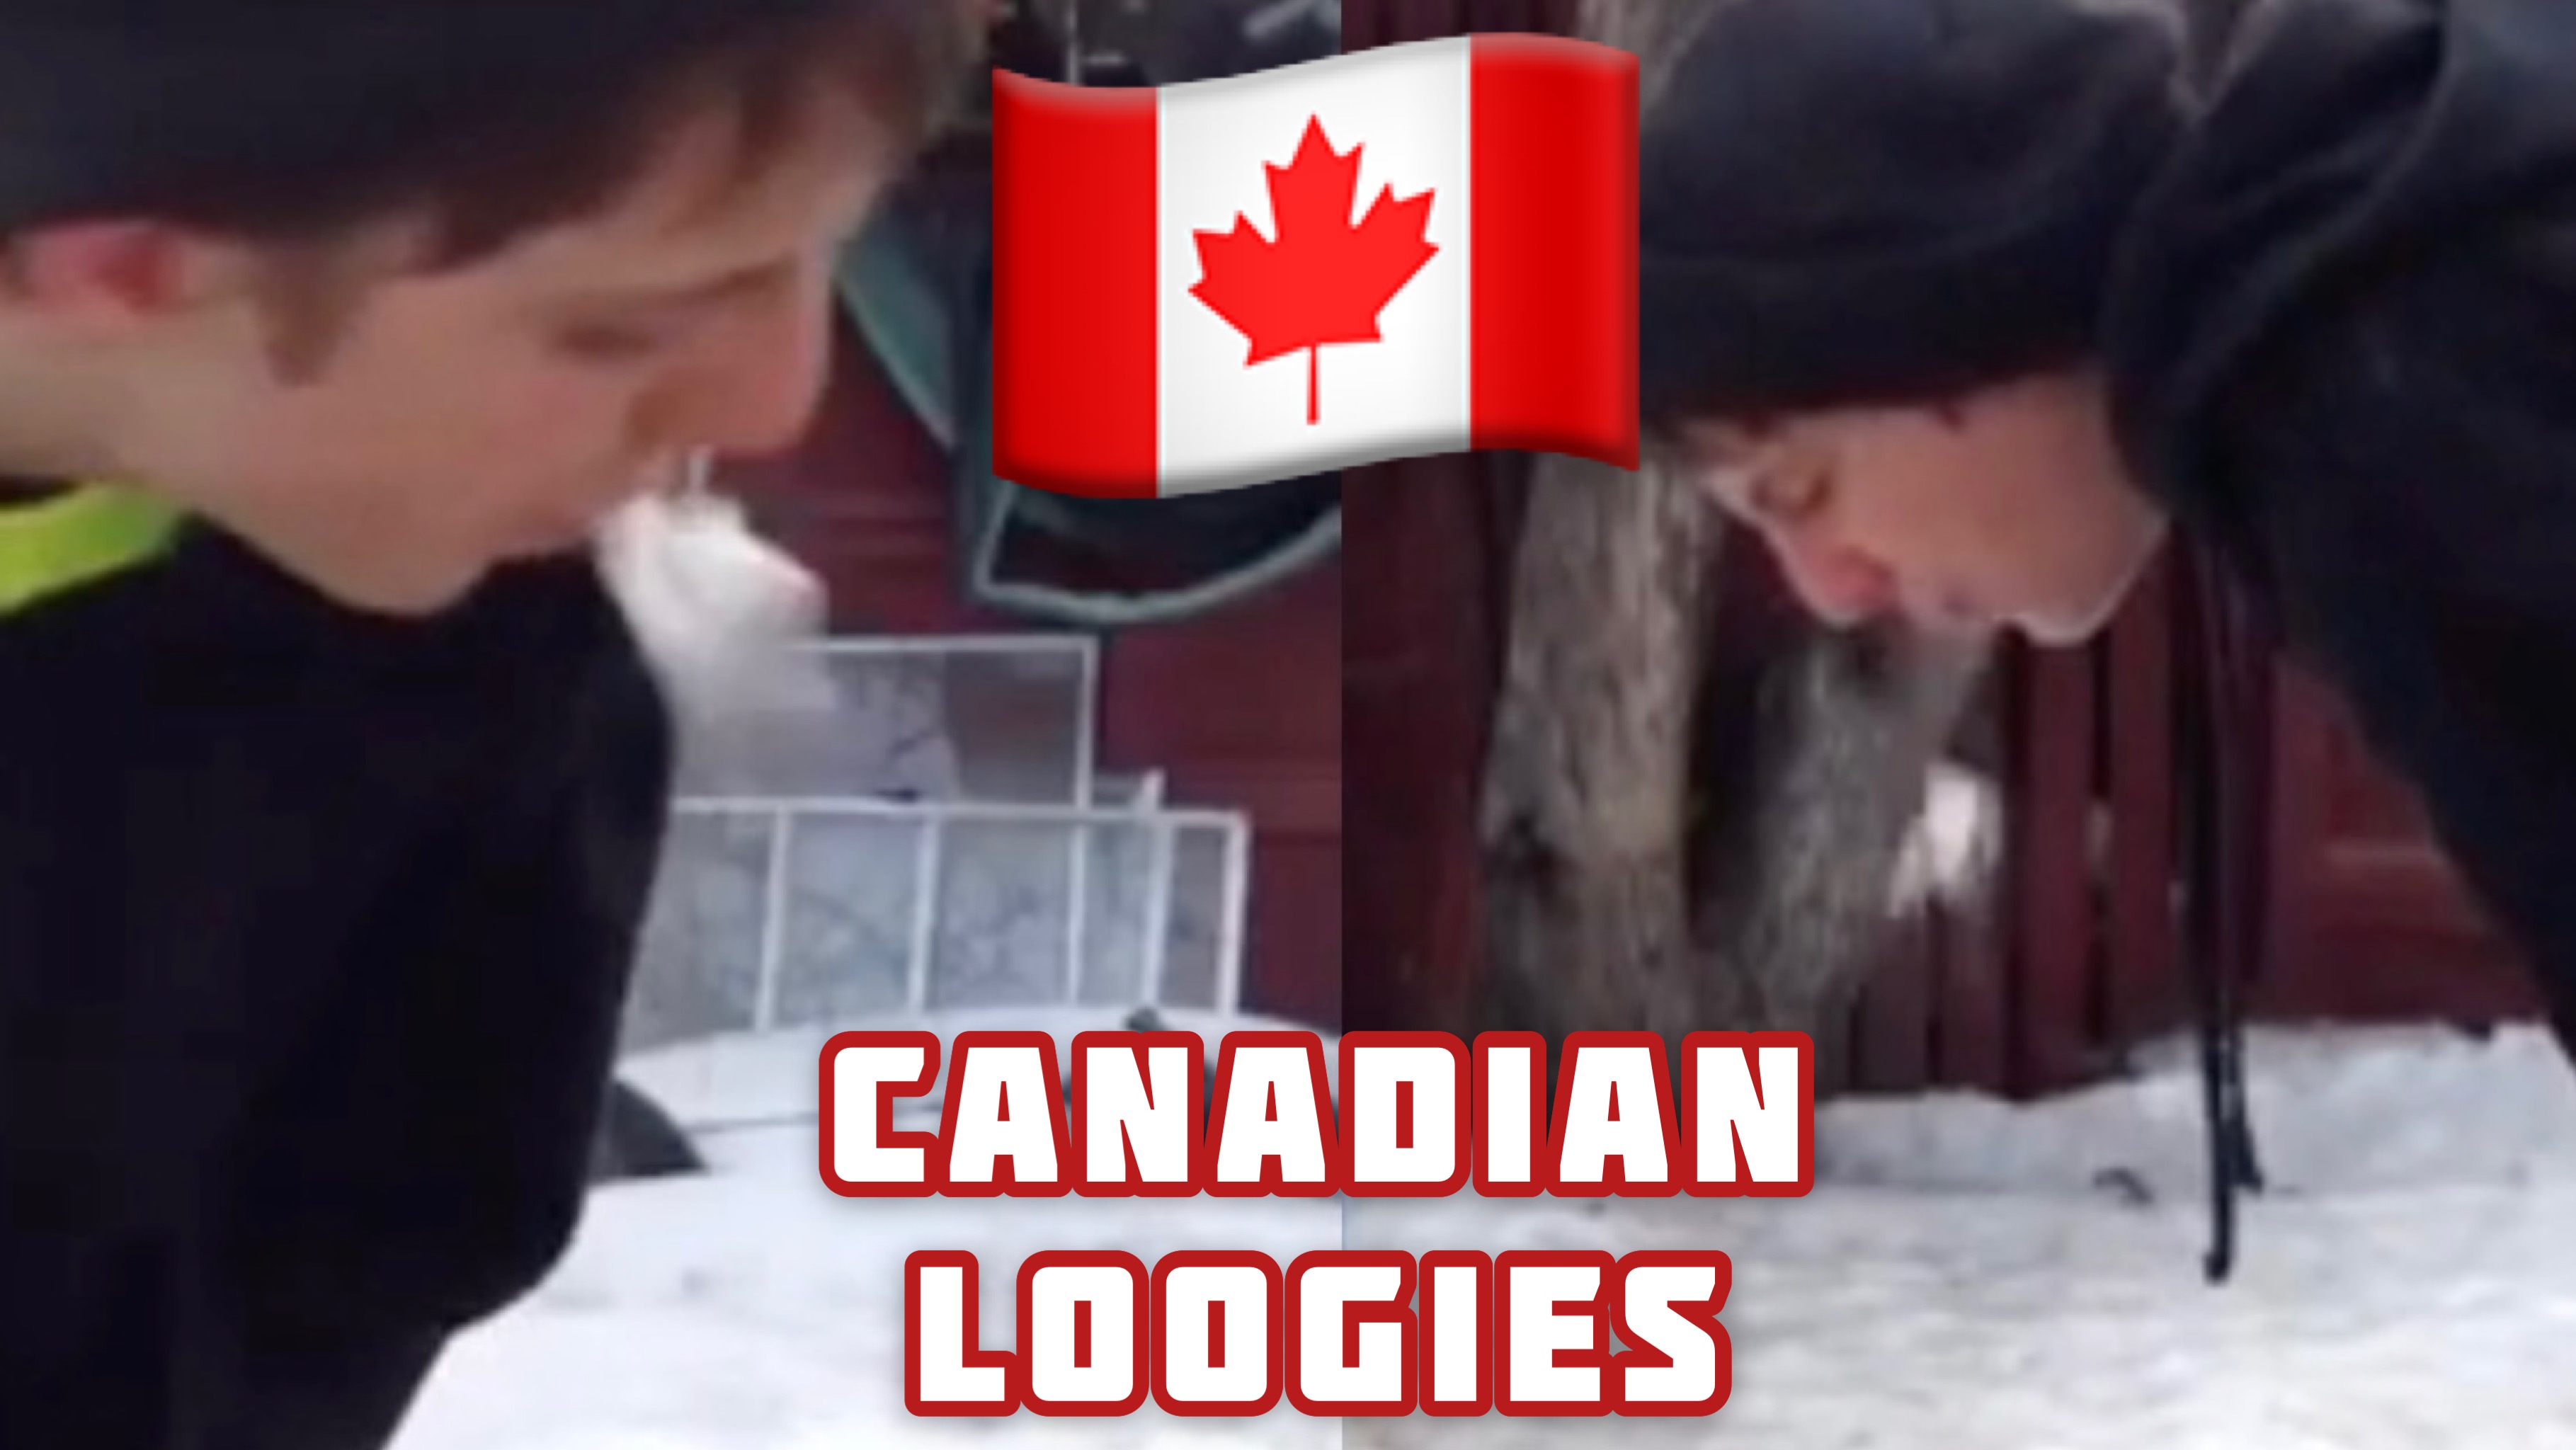 It's Freakin Loogies in Canada Aye?